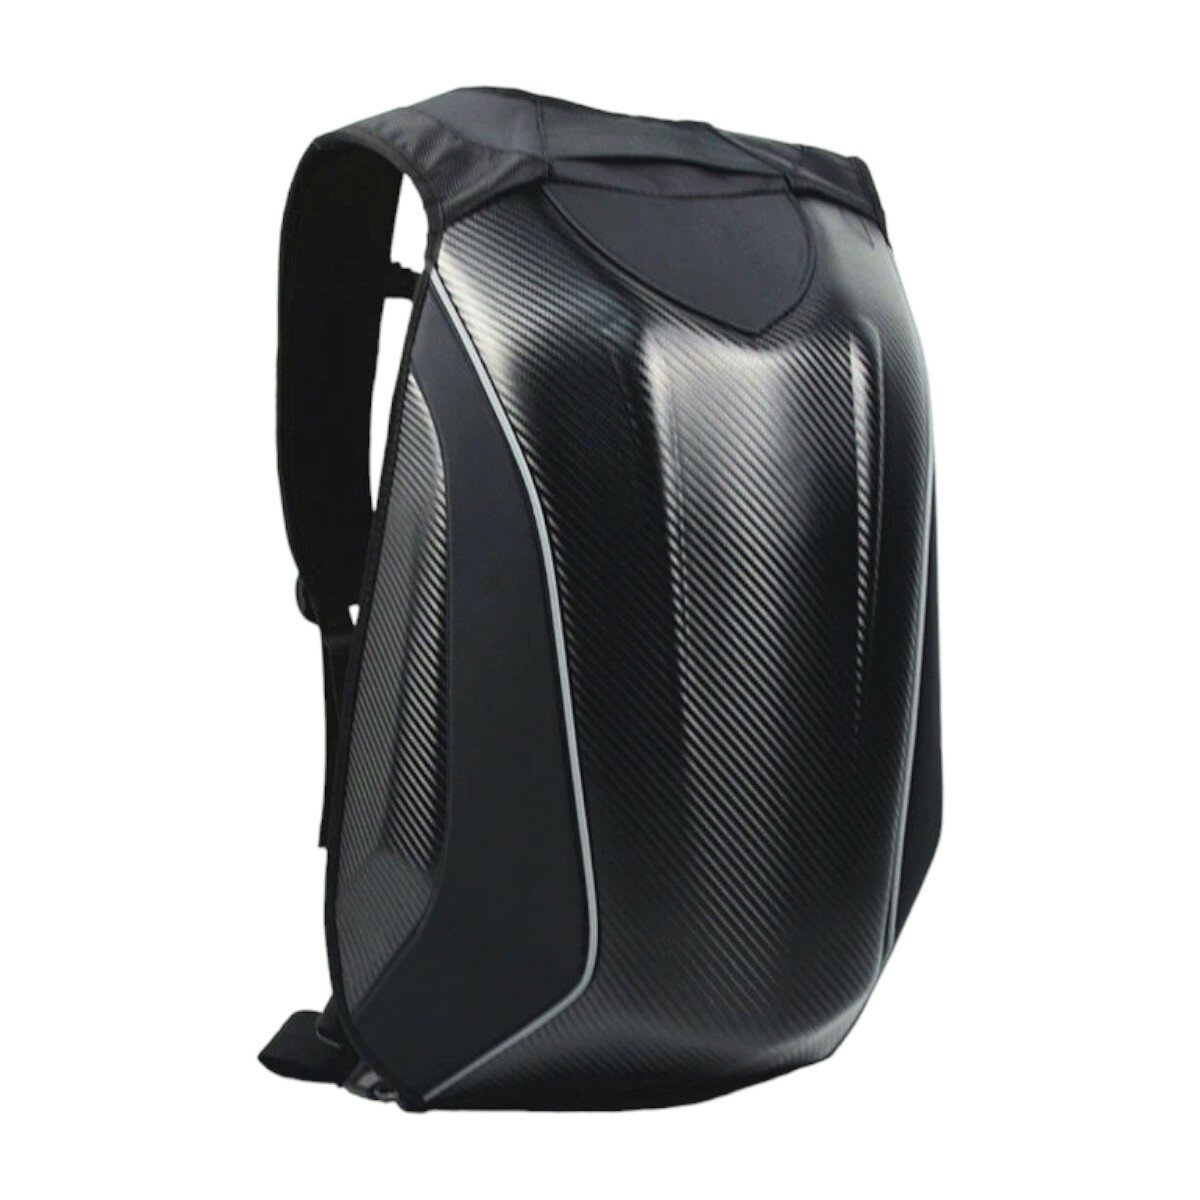 Моторюкзак Carbon с расширением рюкзак с защитой для мотоциклиста на мотоцикл скутер квадроцикл, карбон черный